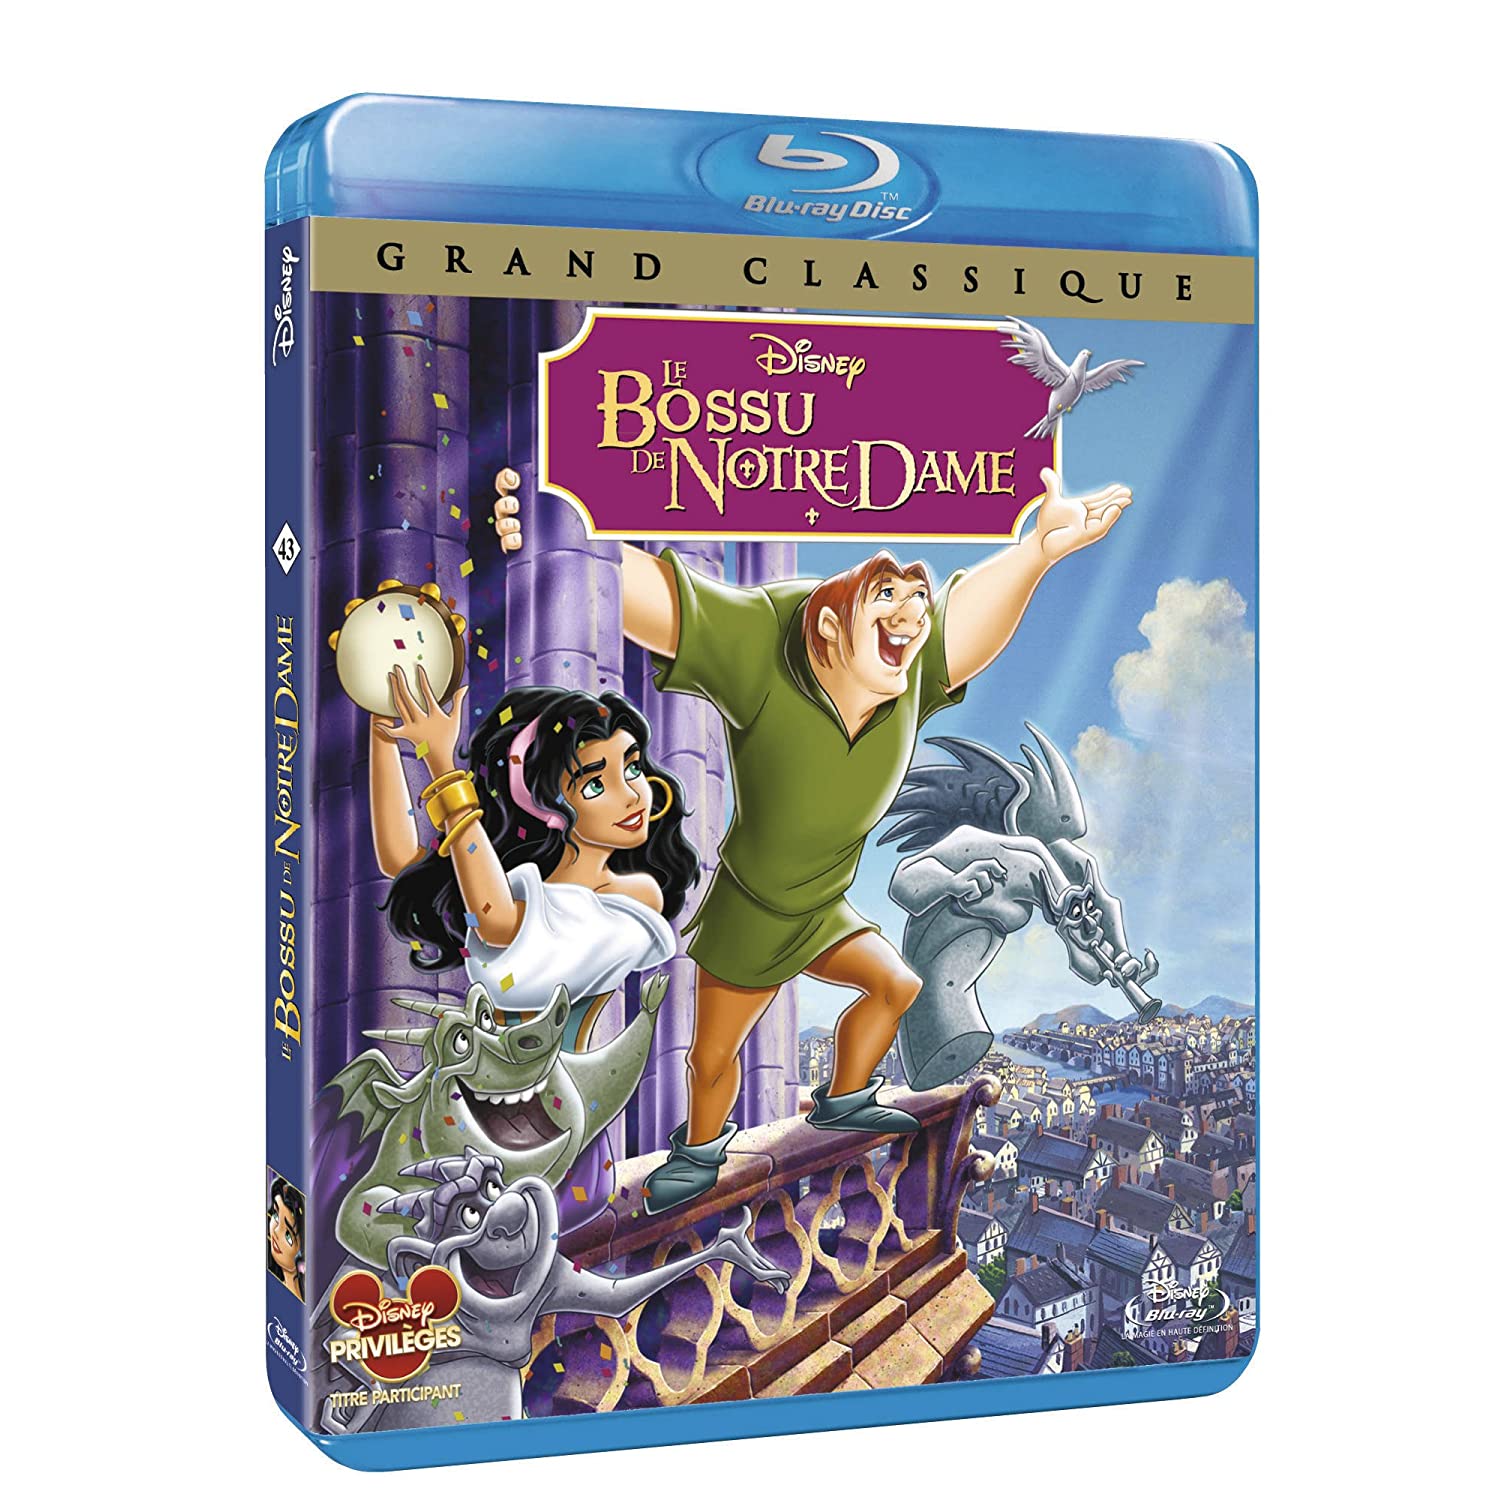 Les jaquettes DVD et Blu-ray des futurs Disney - Page 14 81d6xBohTWL._AA1500_